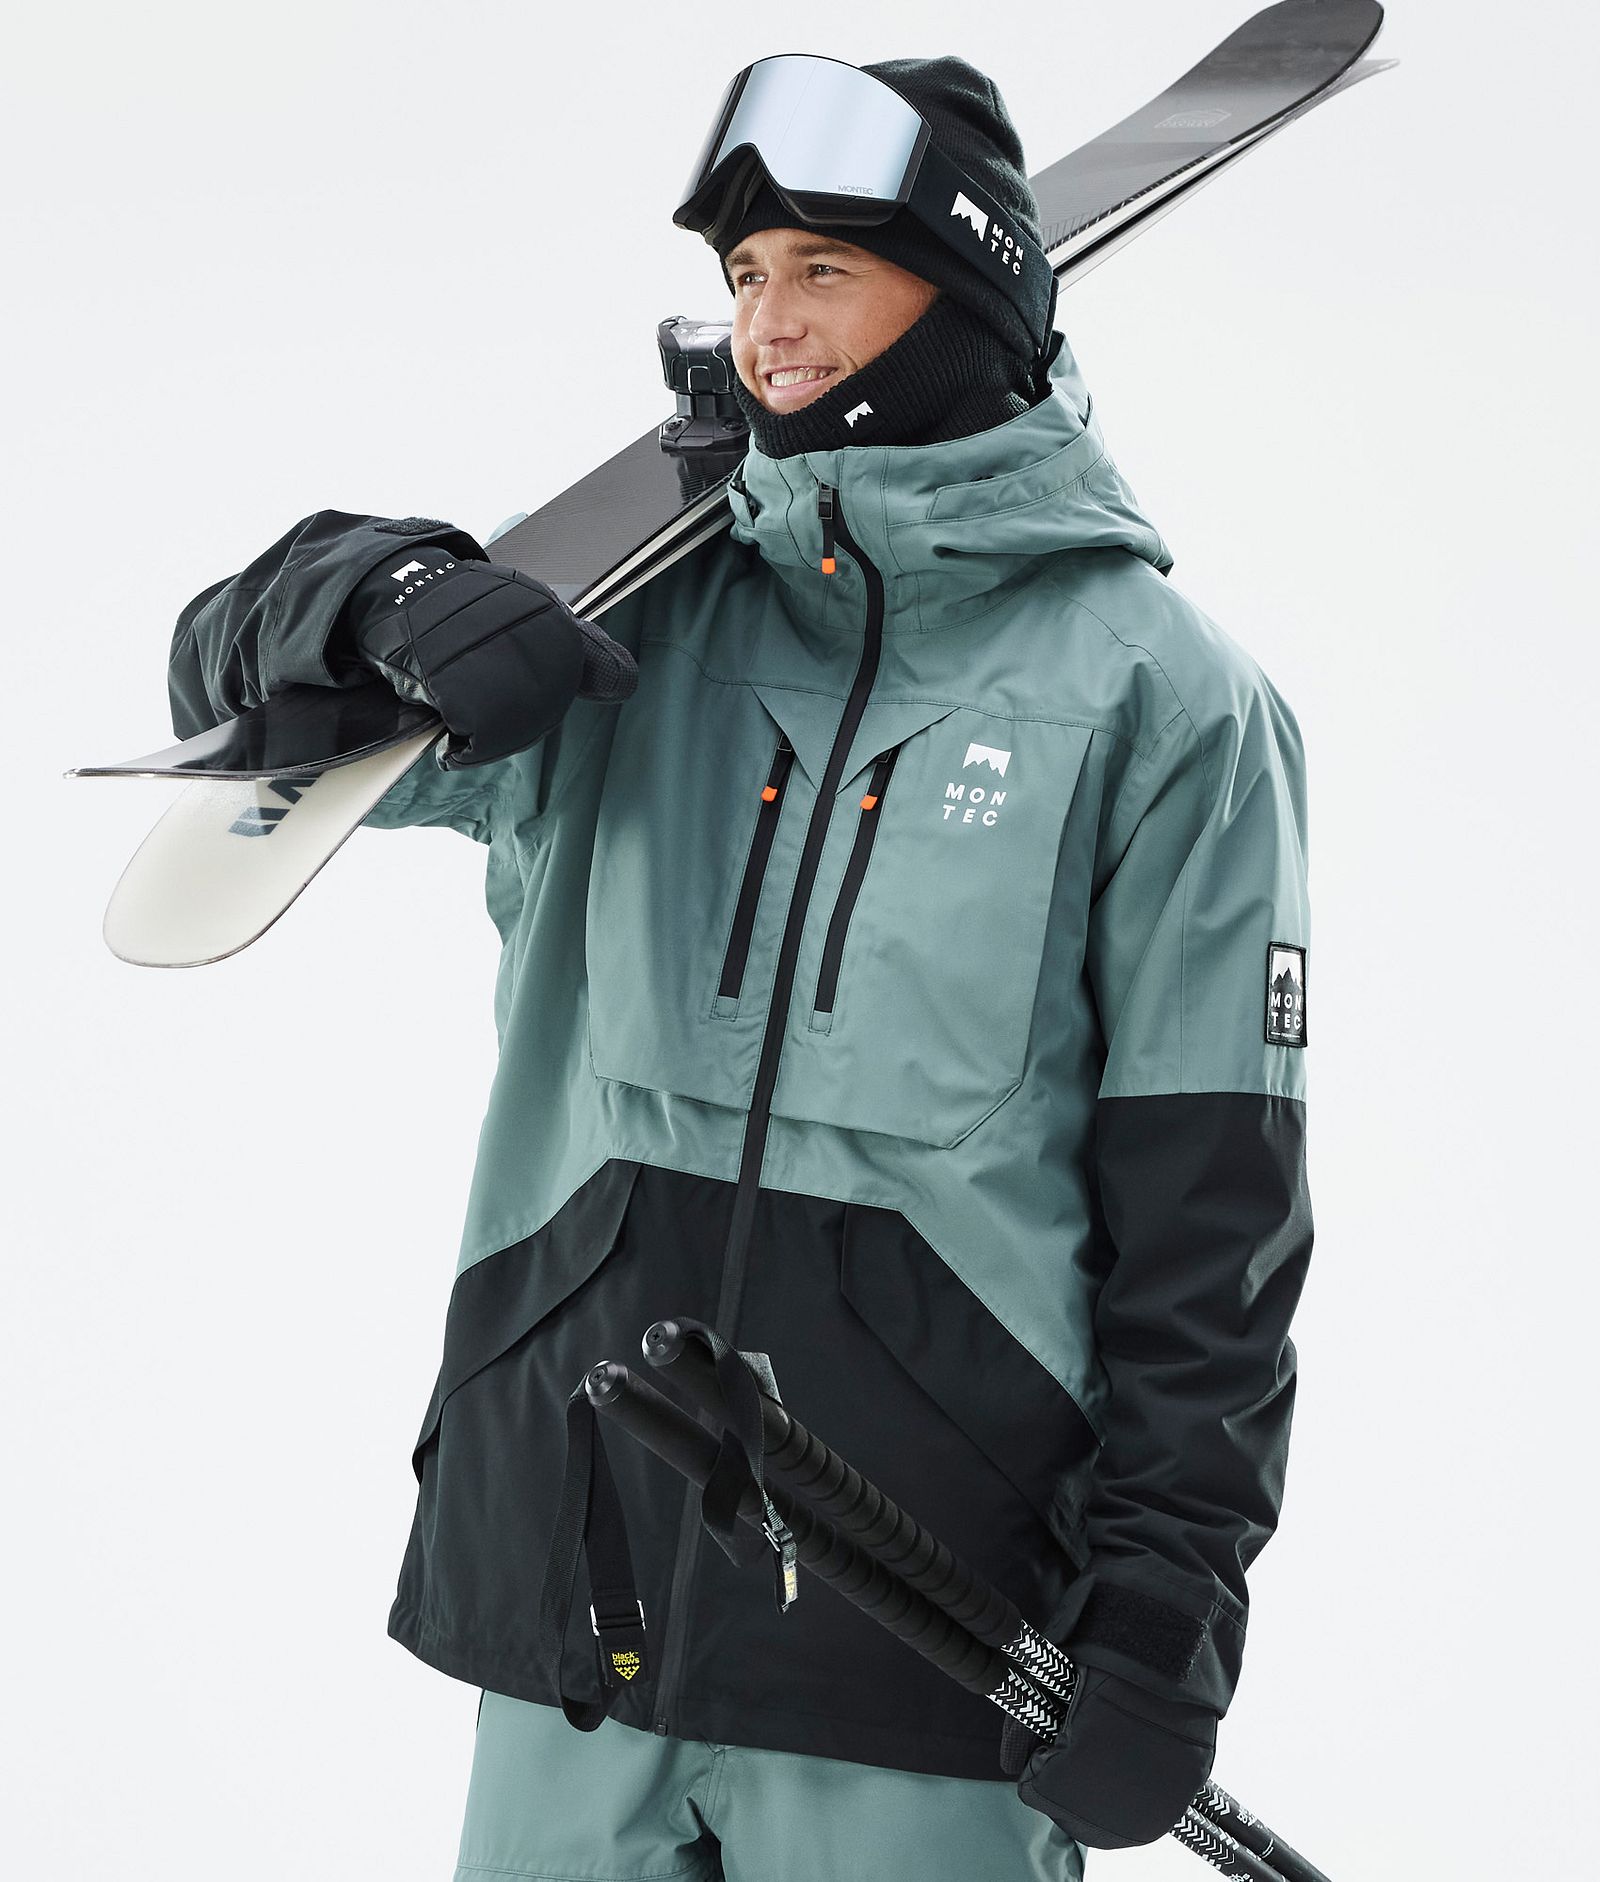 Manteaux et pantalons de ski isolés pour hommes – Vertical Sports